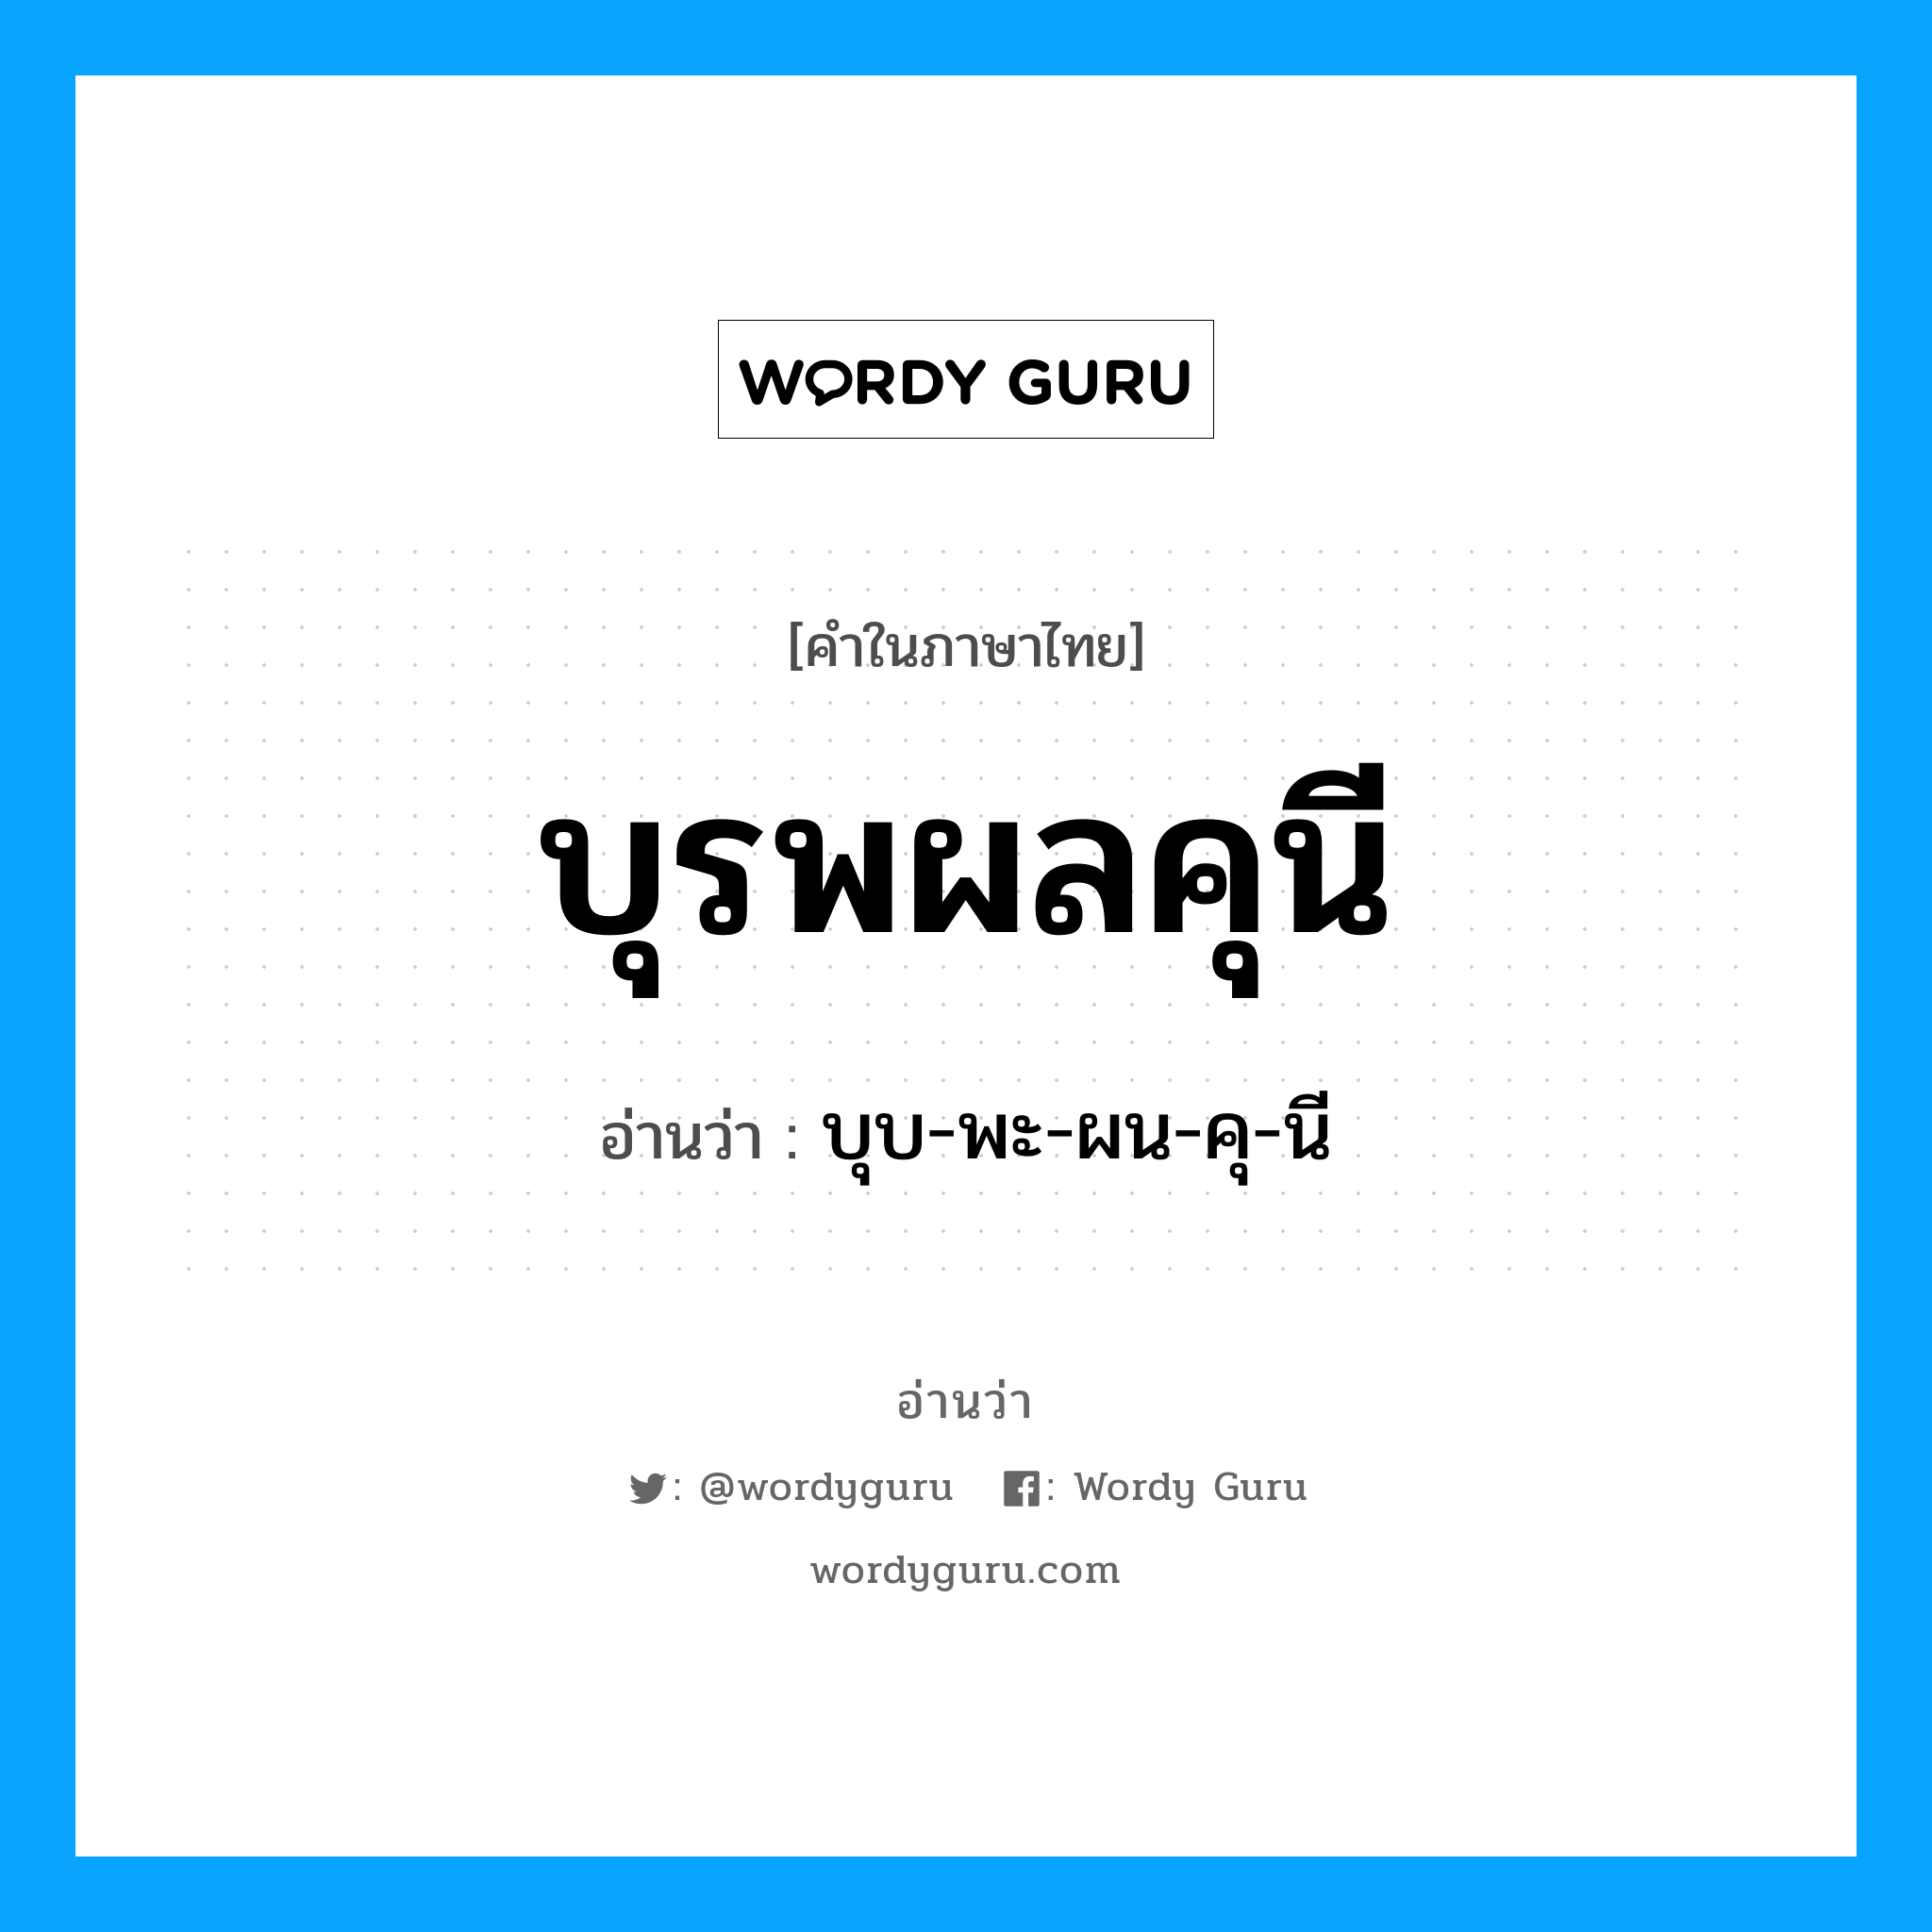 บุบ-พะ-ผน-คุ-นี เป็นคำอ่านของคำไหน?, คำในภาษาไทย บุบ-พะ-ผน-คุ-นี อ่านว่า บุรพผลคุนี